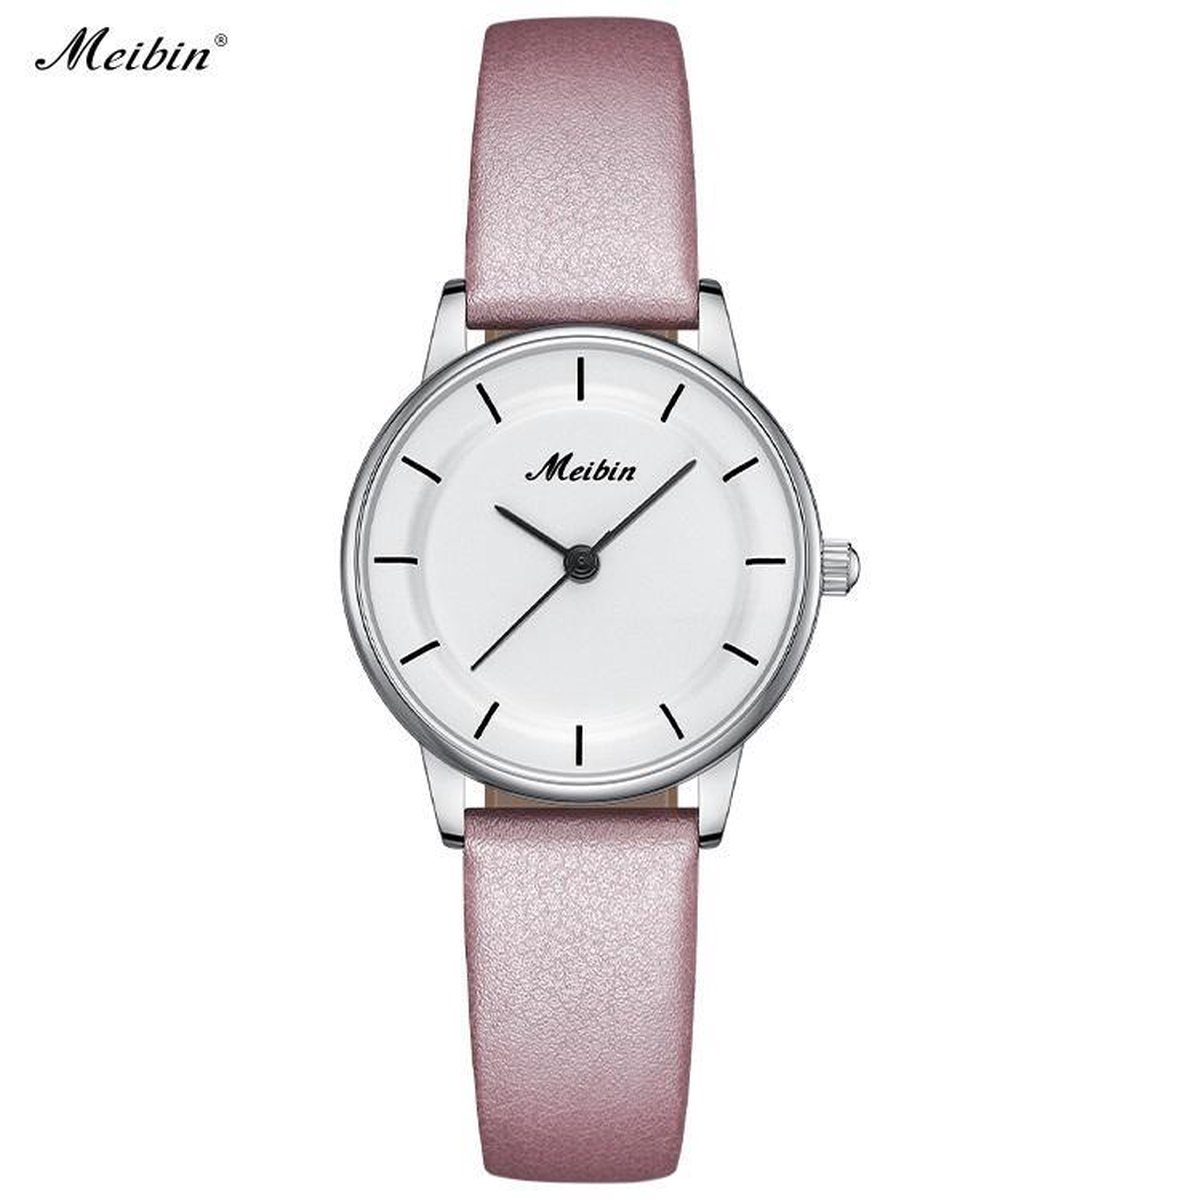 Longbo - Meibin - Dames Horloge - Licht Roze/Zilver/Wit - 25mm